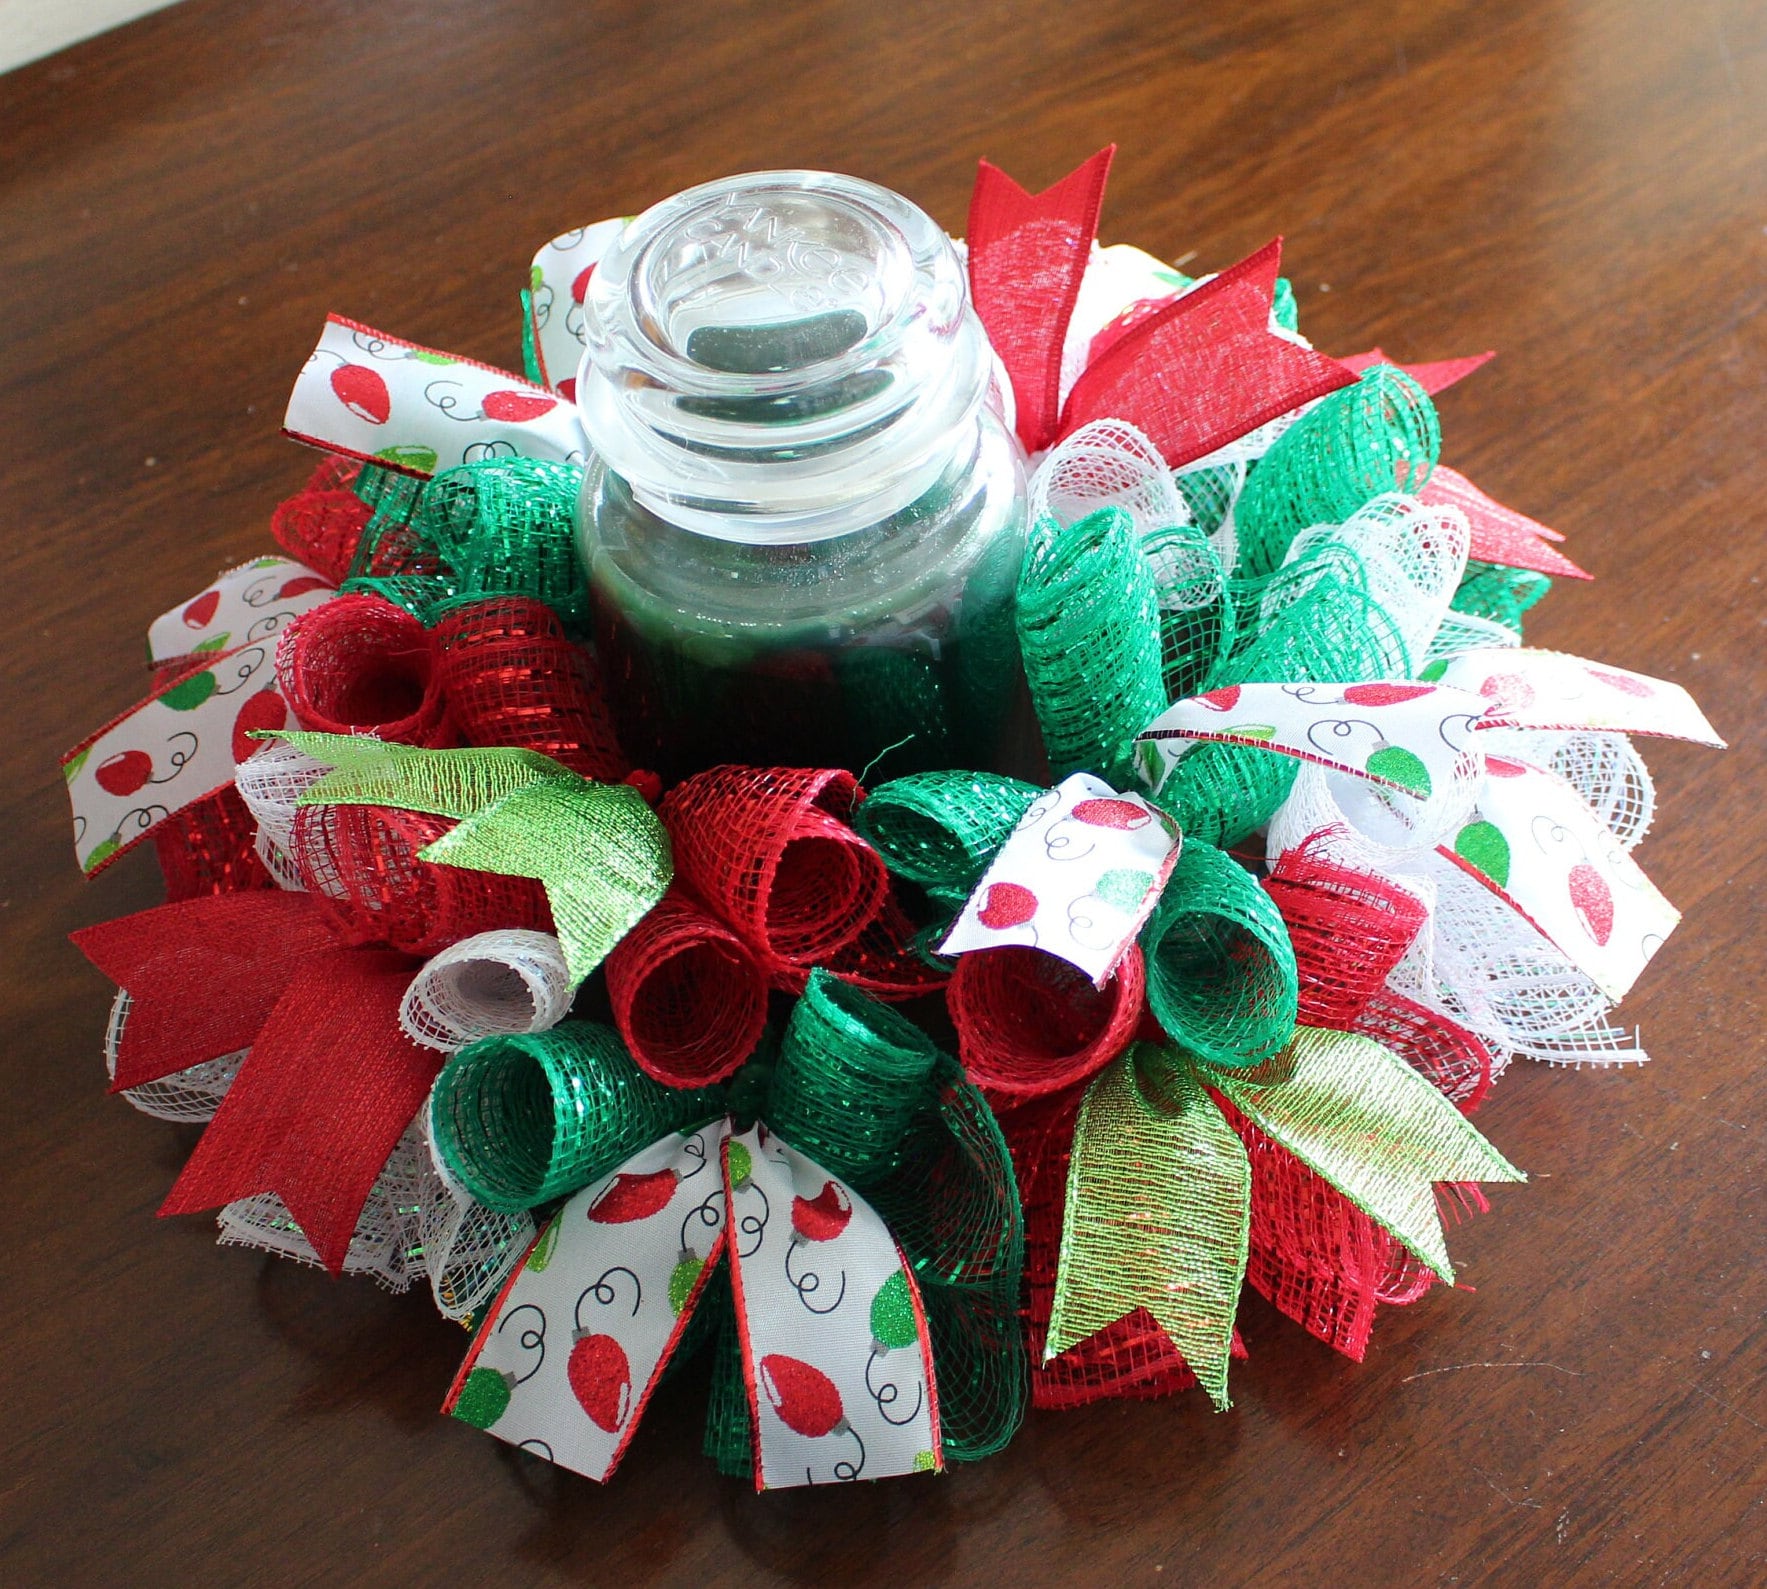 DIY Christmas Tree Craft Kit. Christmas String Art Kit, Fun Christmas Gift  for Adults / Kids. Mantel Decor, Christmas Craft for Large Event 